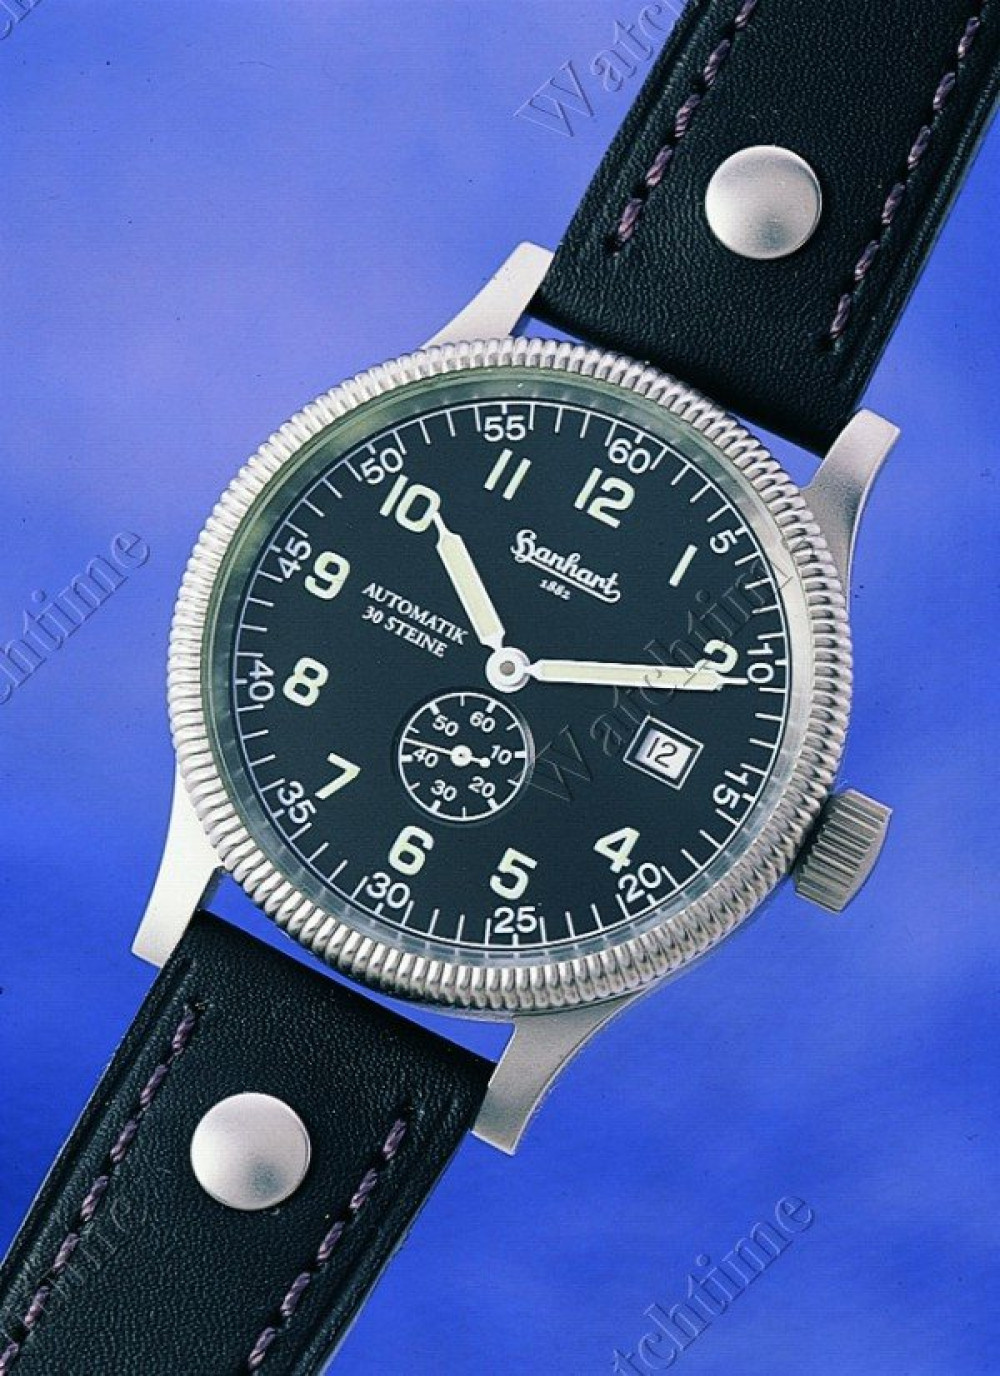 Zegarek firmy Hanhart, model Minos Fliegeruhr